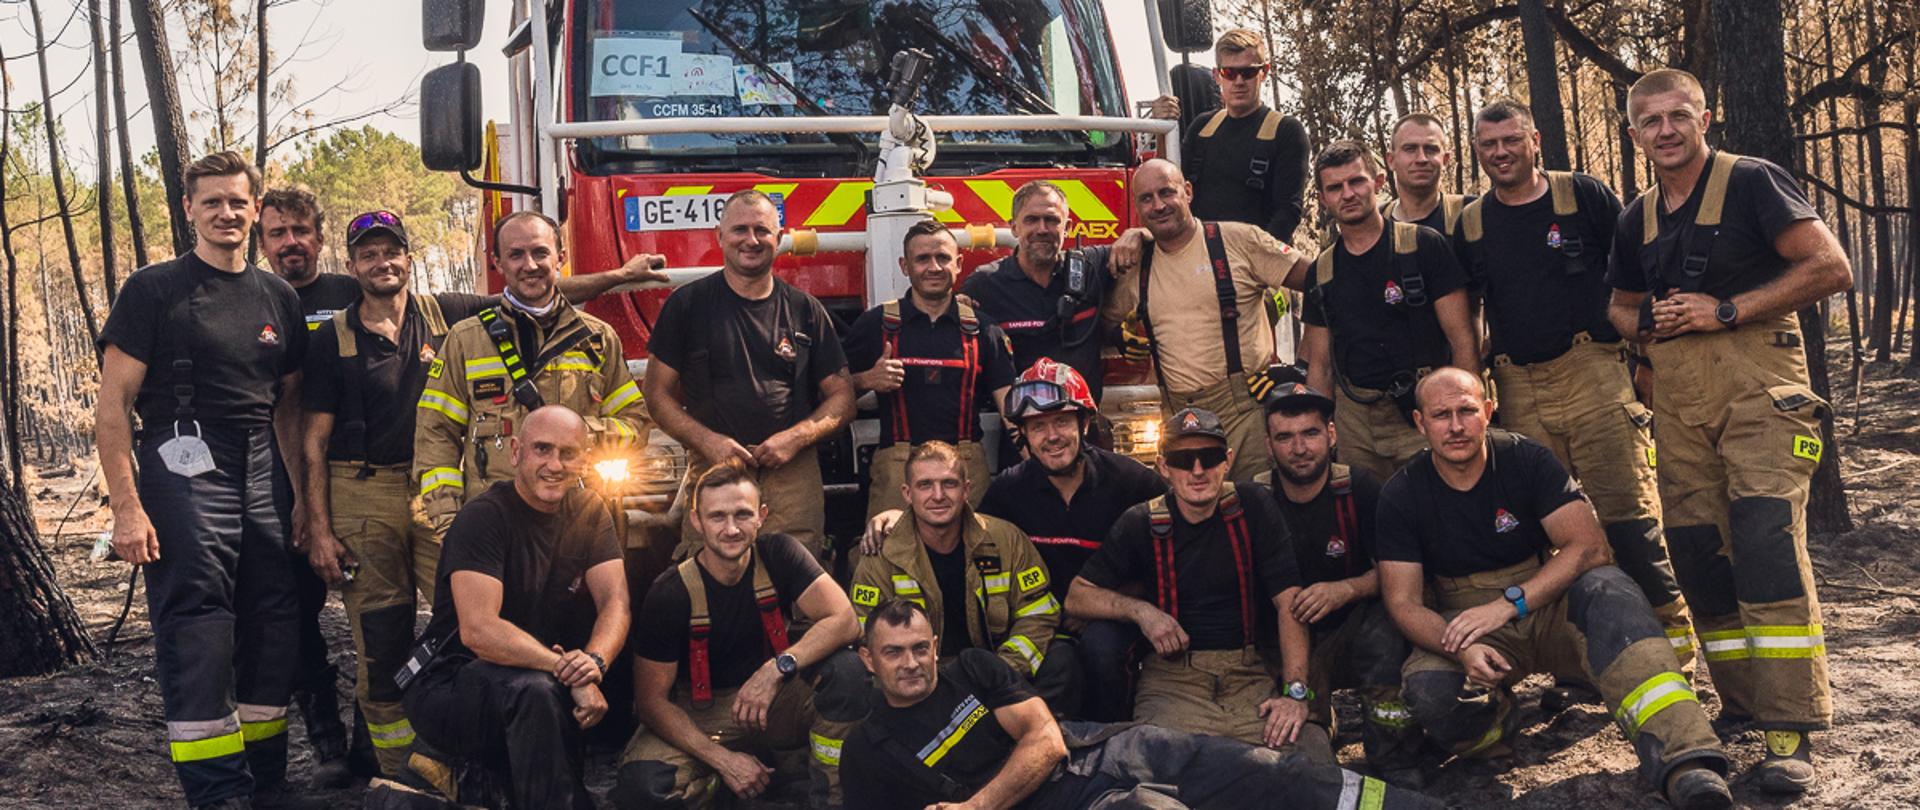 na zdjęciu widać grupę strażaków w ubraniach bojowych, na tle francuskiego samochodu strażackiego. Polscy strażacy są w działaniach gaśniczych w lasach w okolicy Bordeaux (Francja)